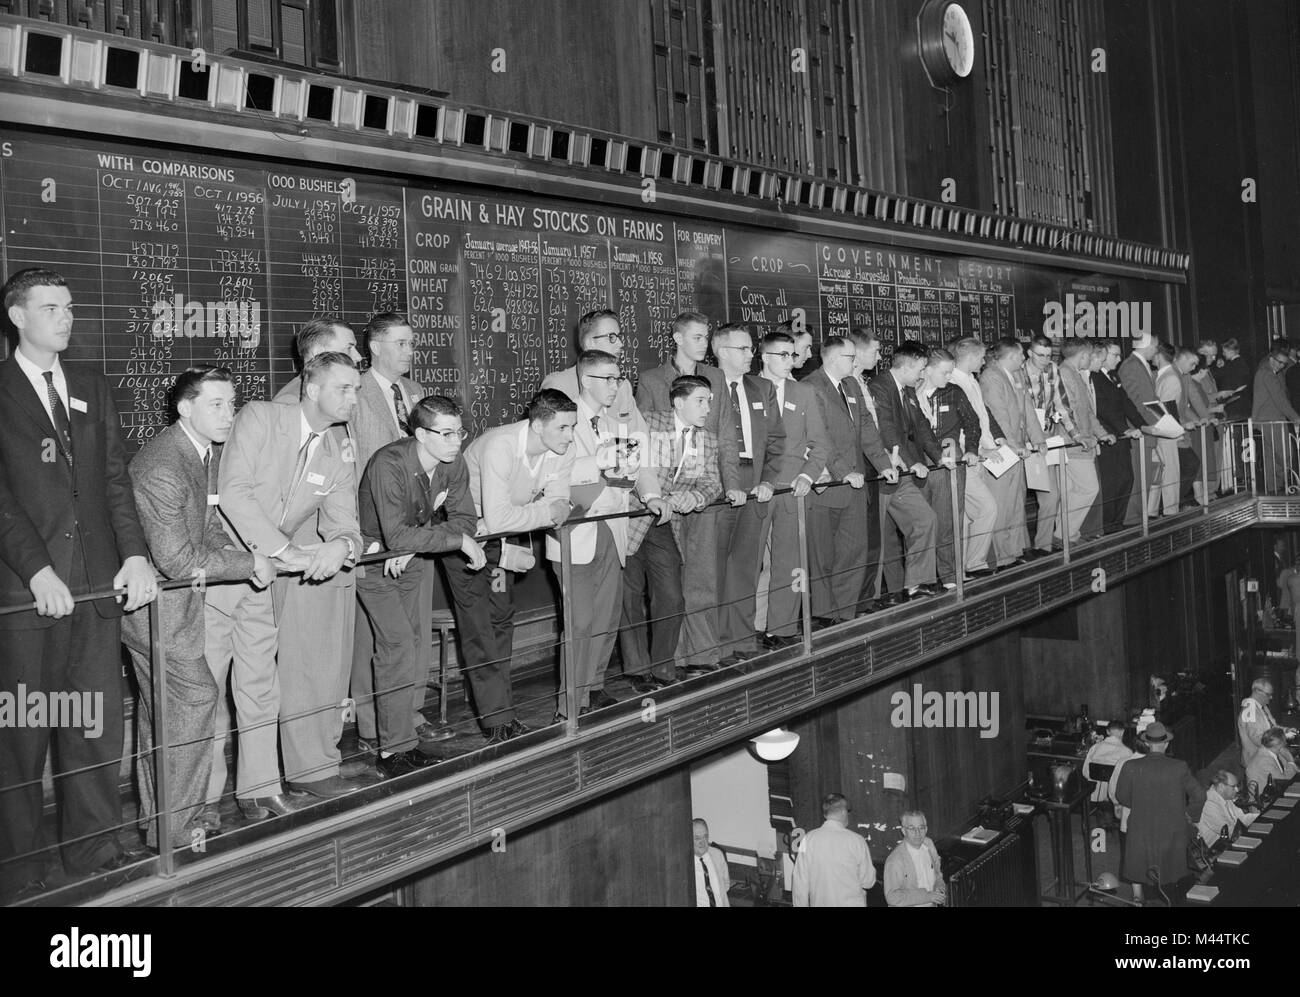 Besucher Masse die anzeigen Galerie mit Blick auf den Gruben an der Chicago Board of Trade, Ca. 1958. Stockfoto